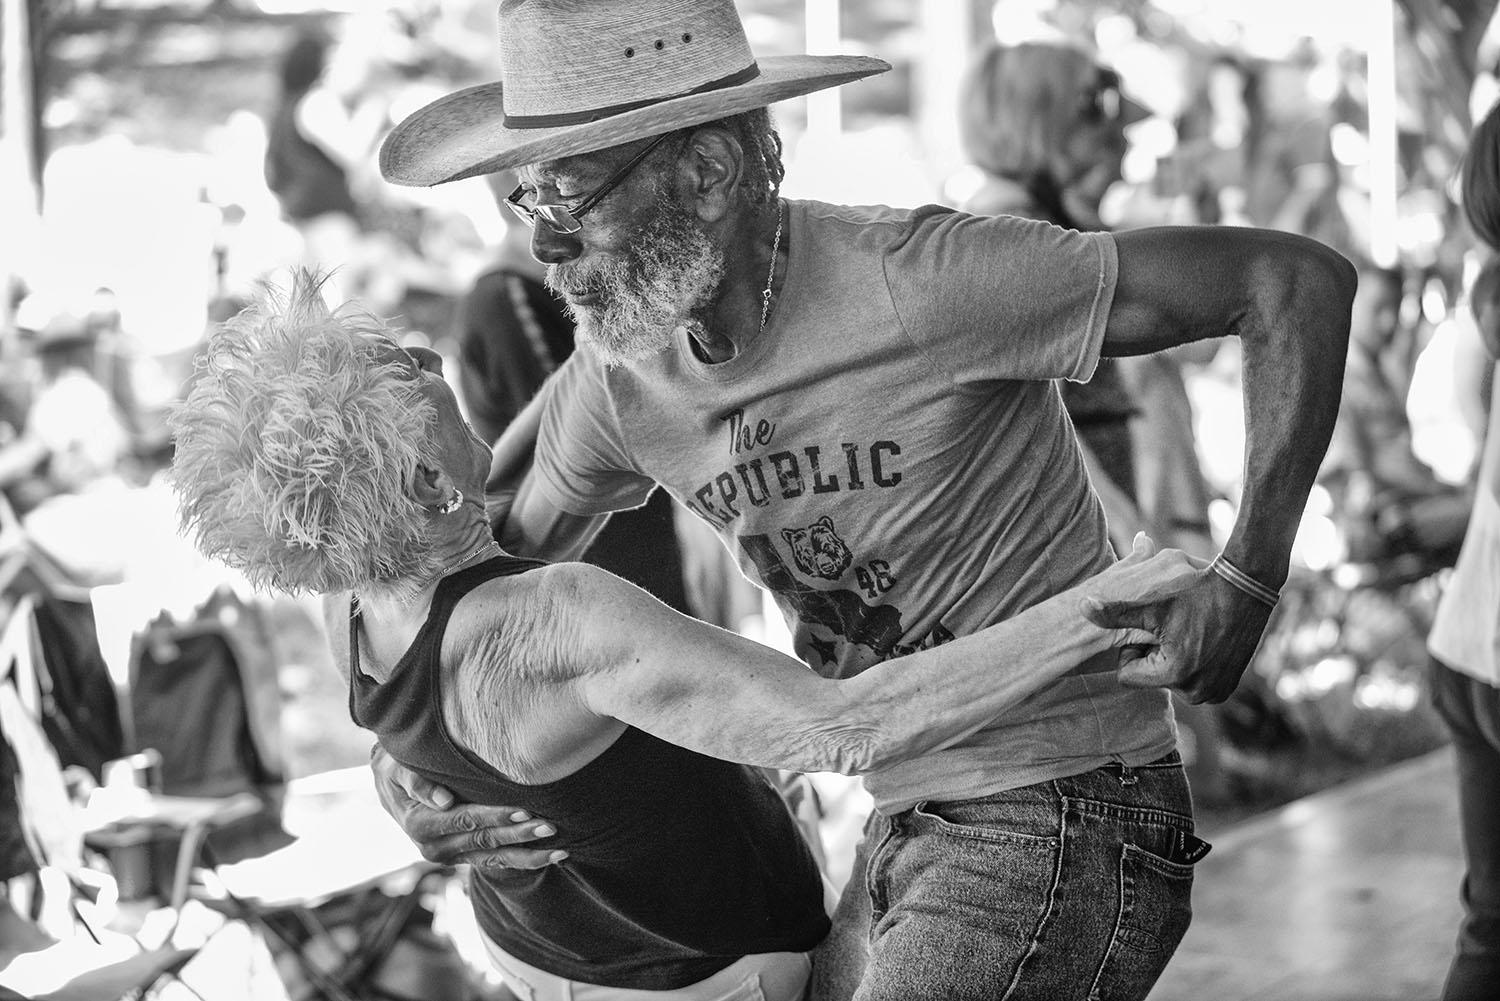 Un moment de joie sur la piste de danse du Festival Acadiens et Creoles en 2019 à Lafayette, en Louisiane.  Une connexion joyeuse !

Lafayette
Louisiane, États-Unis
2019

Les portraits en noir et blanc de James Whiting sont une recherche de